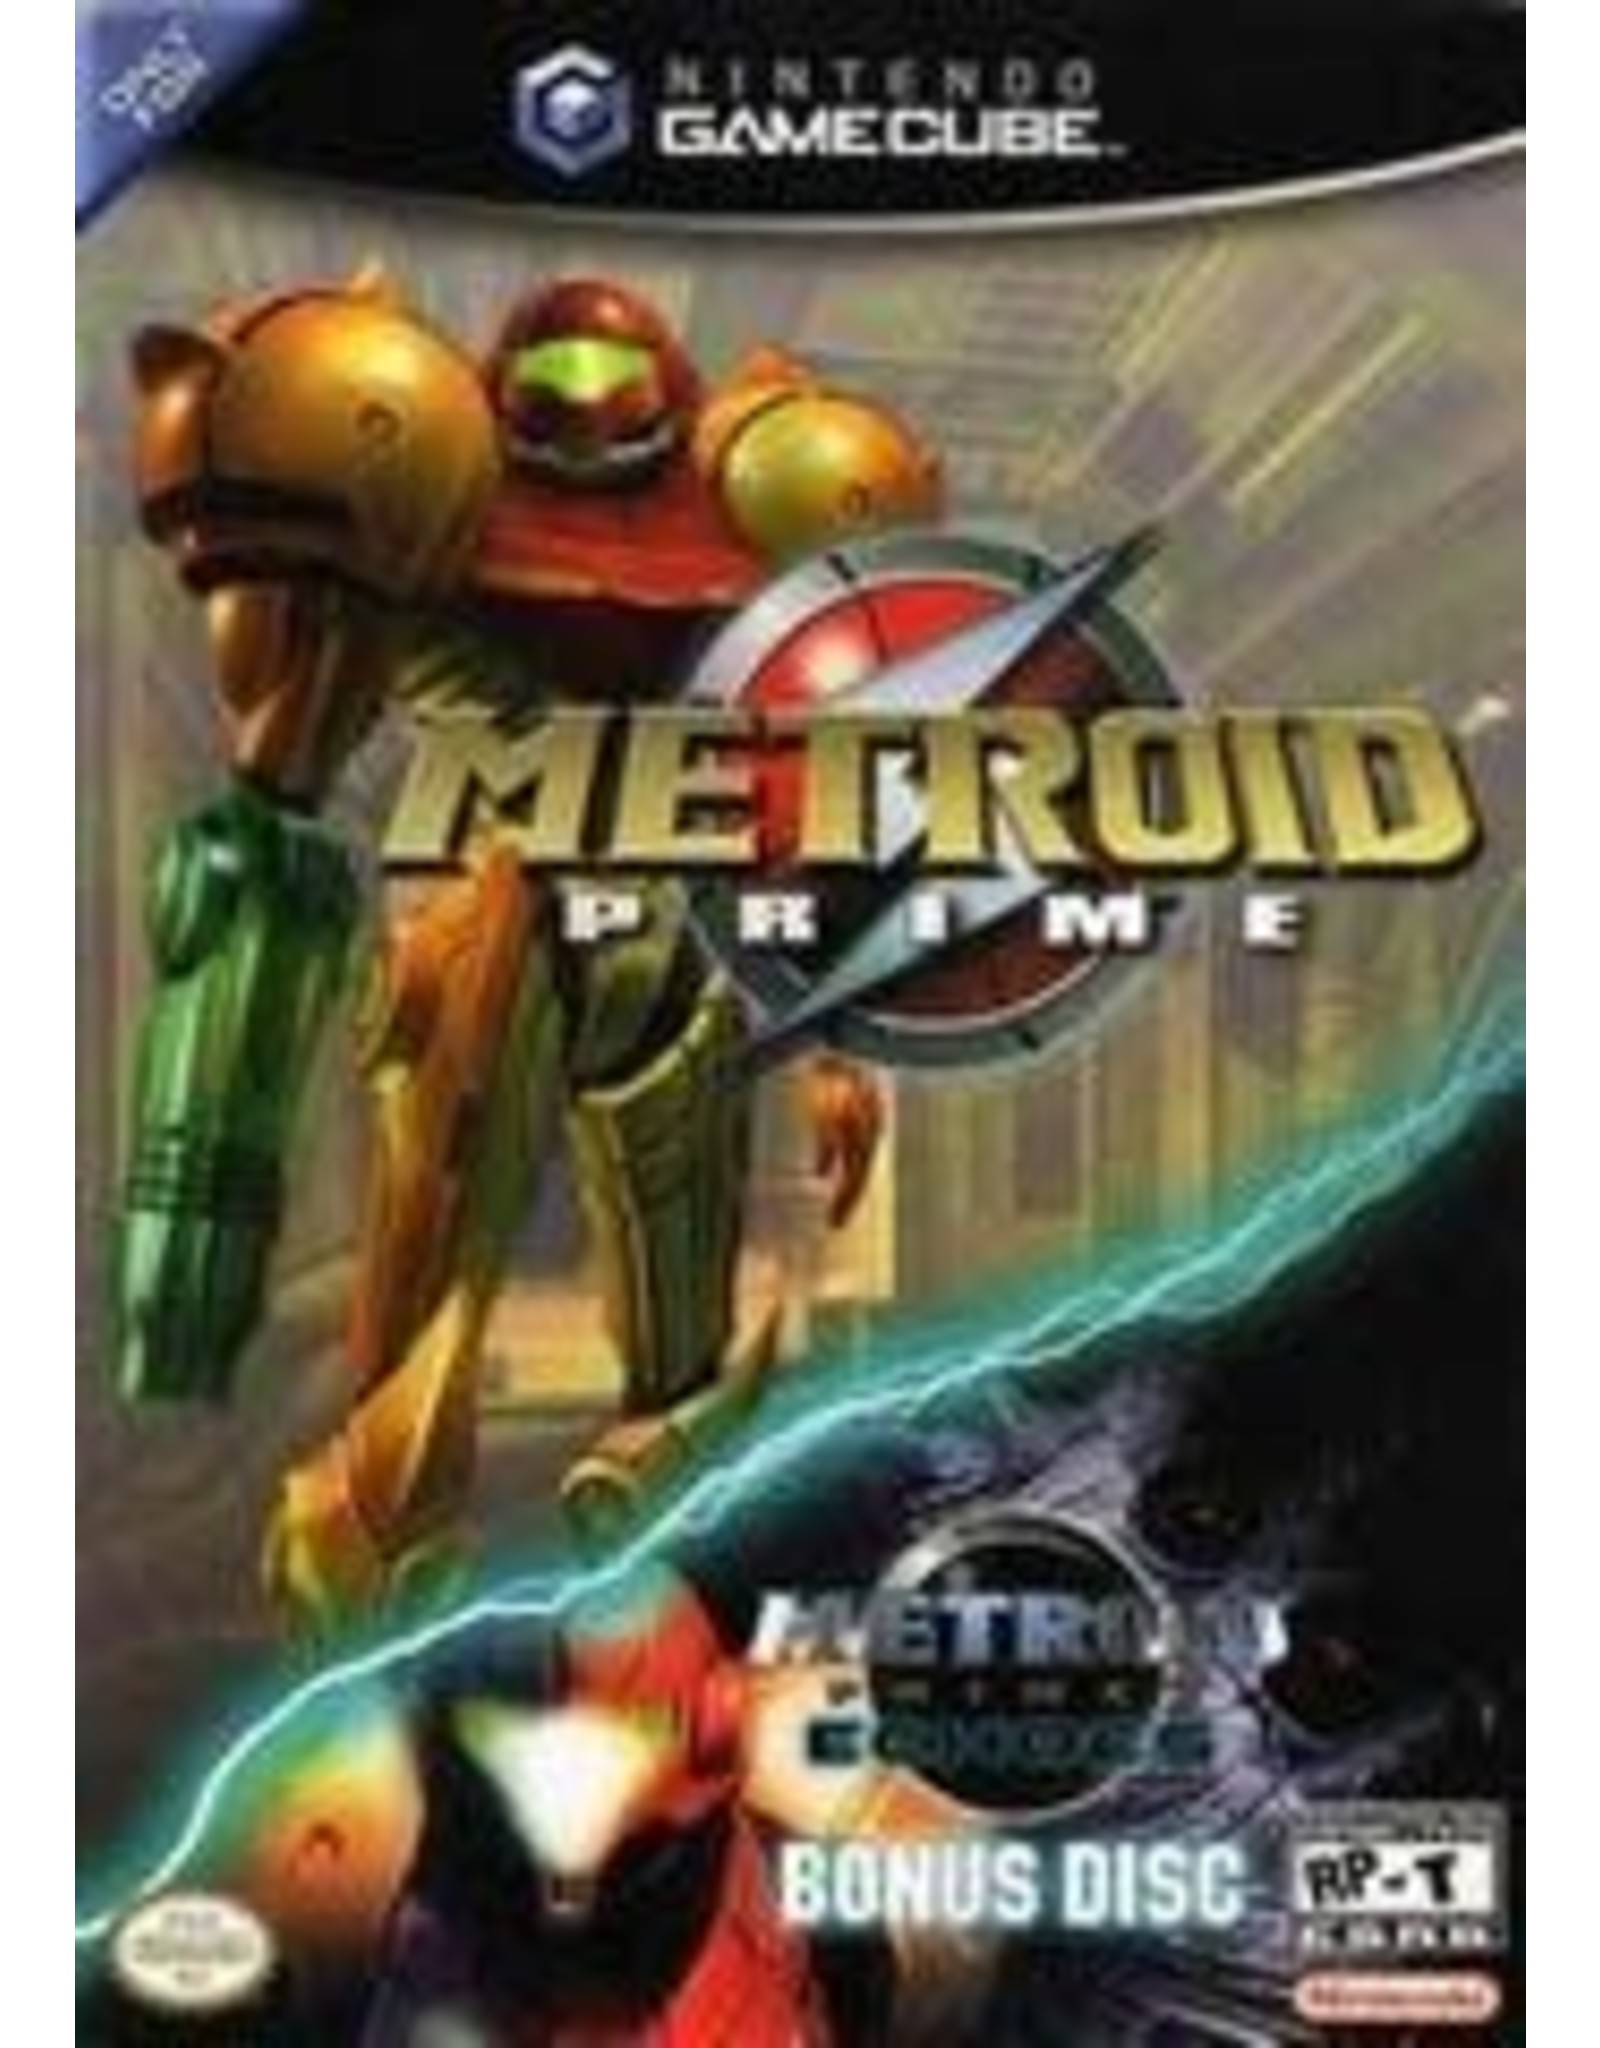 Gamecube Metroid Prime - Echoes Bonus Edition (Used)